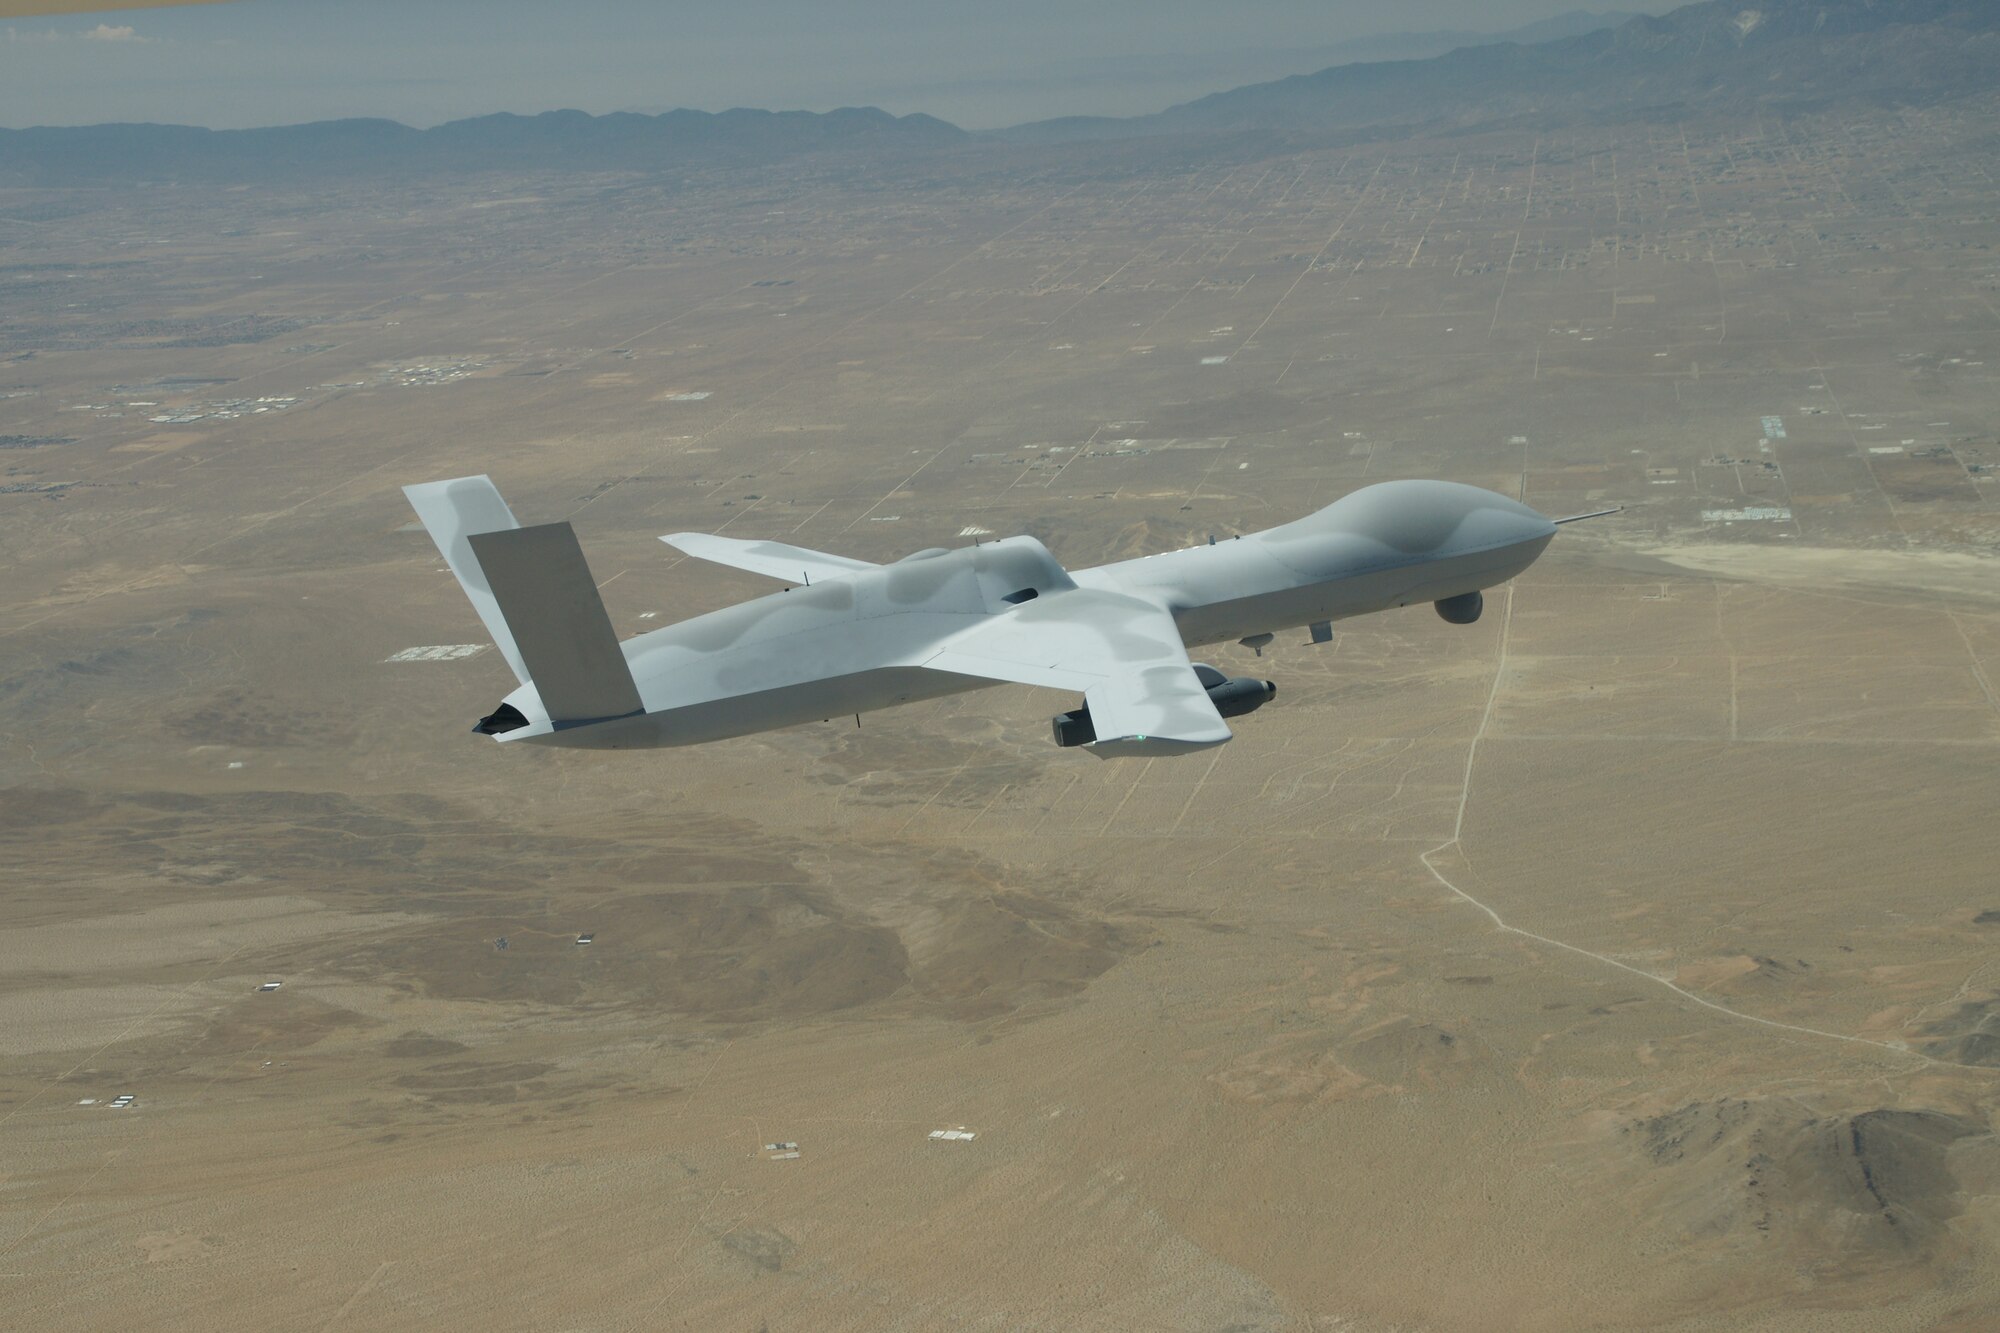 MQ-20 flying near El Mirage, Calif.